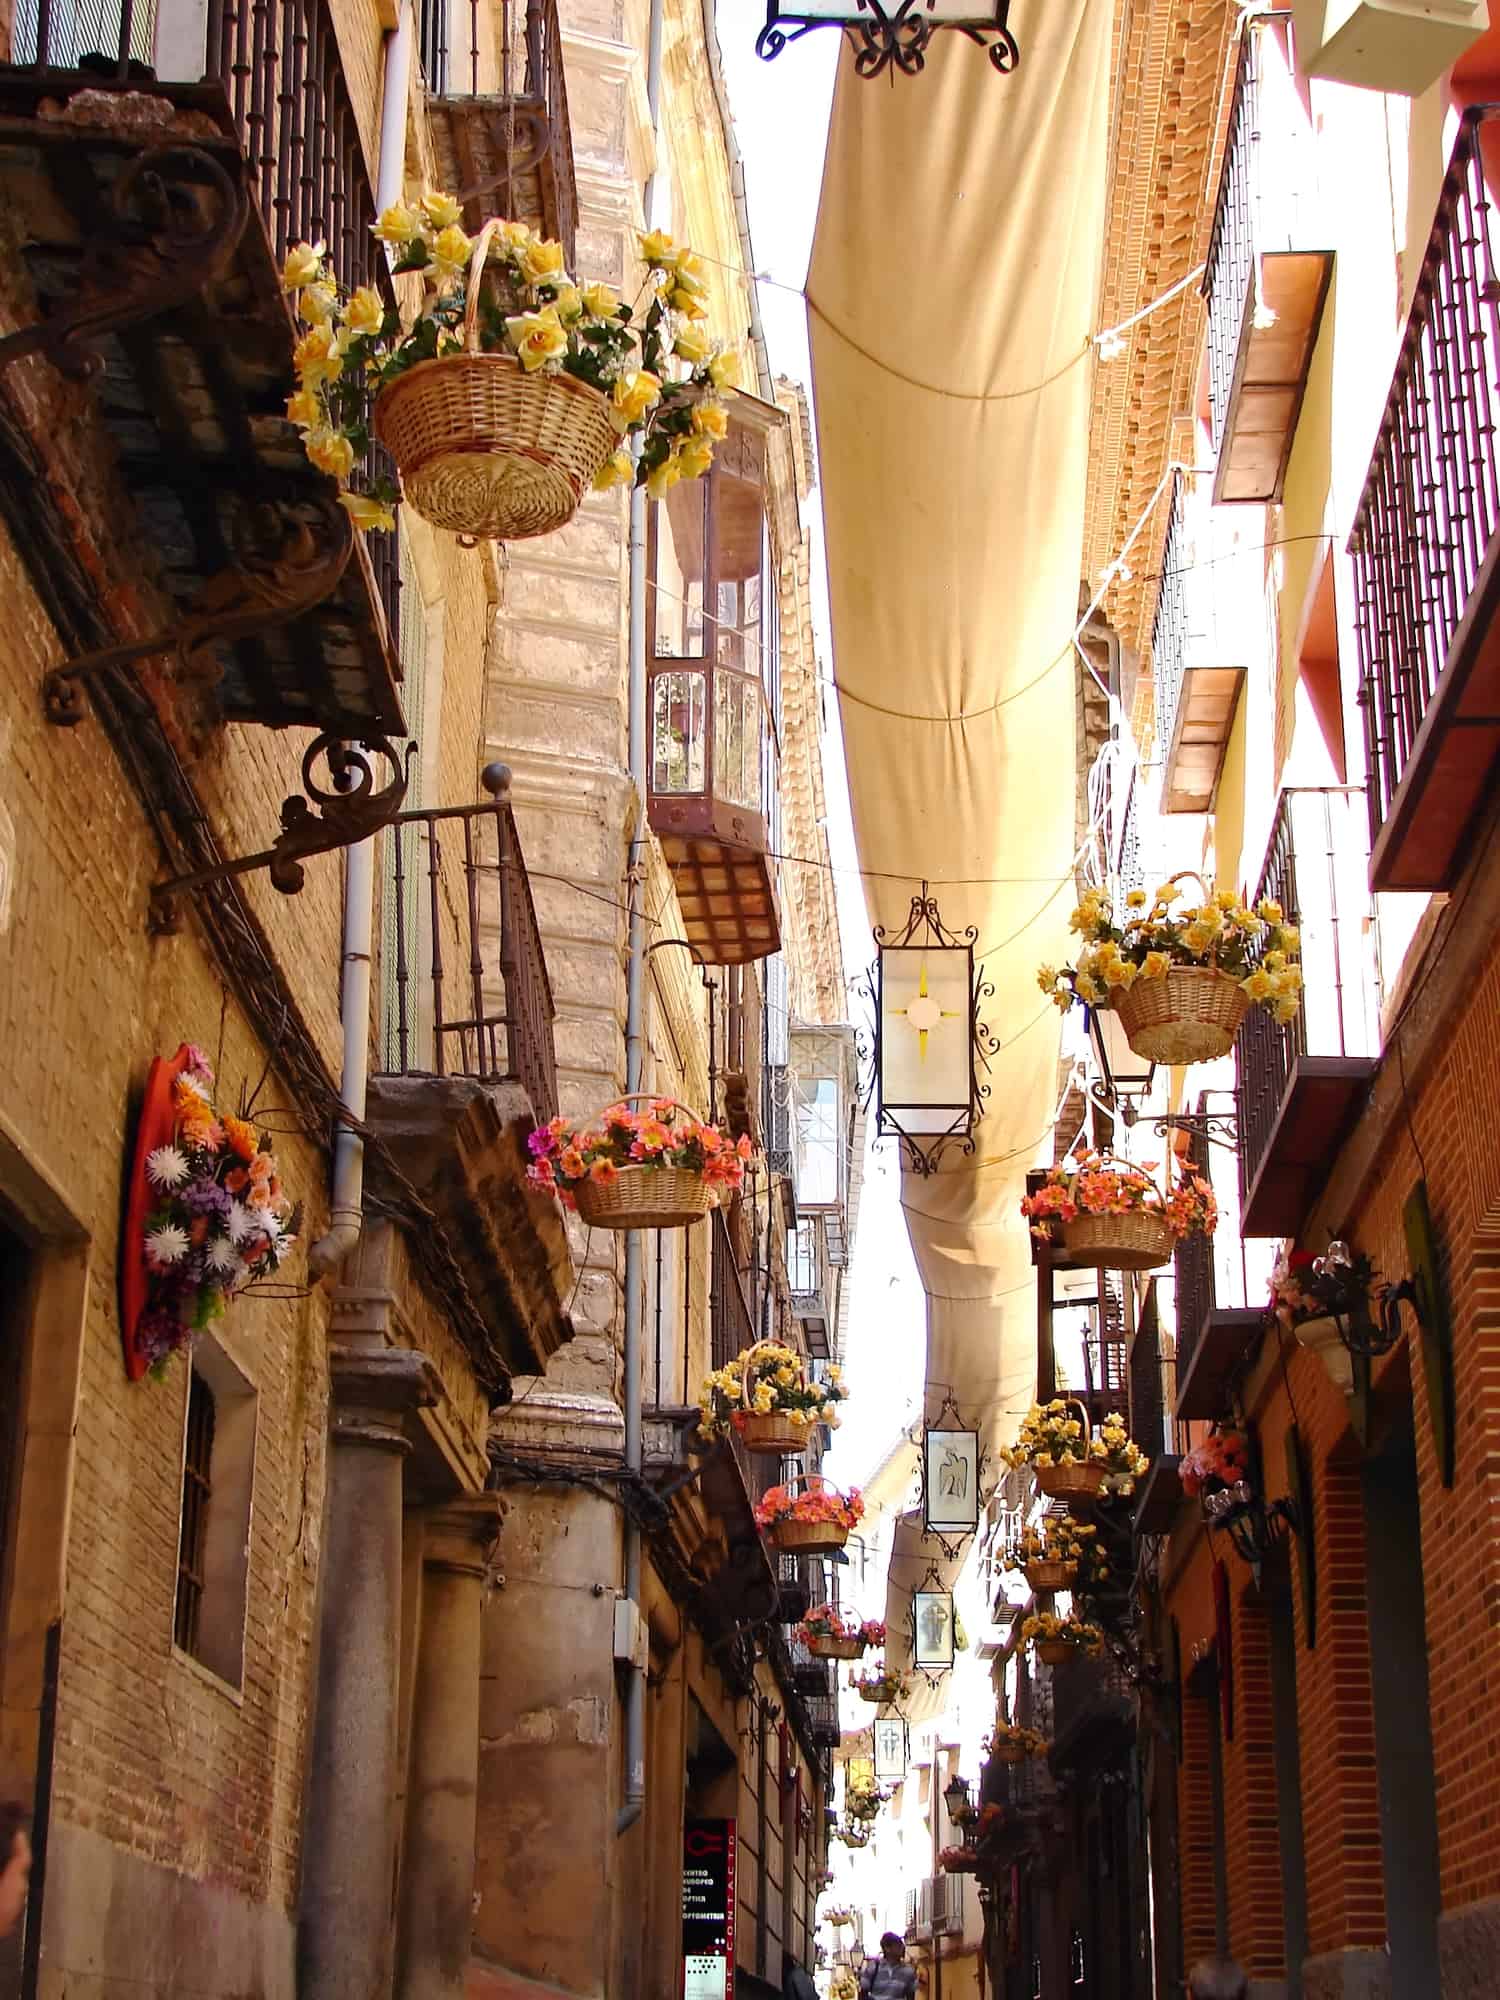 Streets of Sevilla, Spain